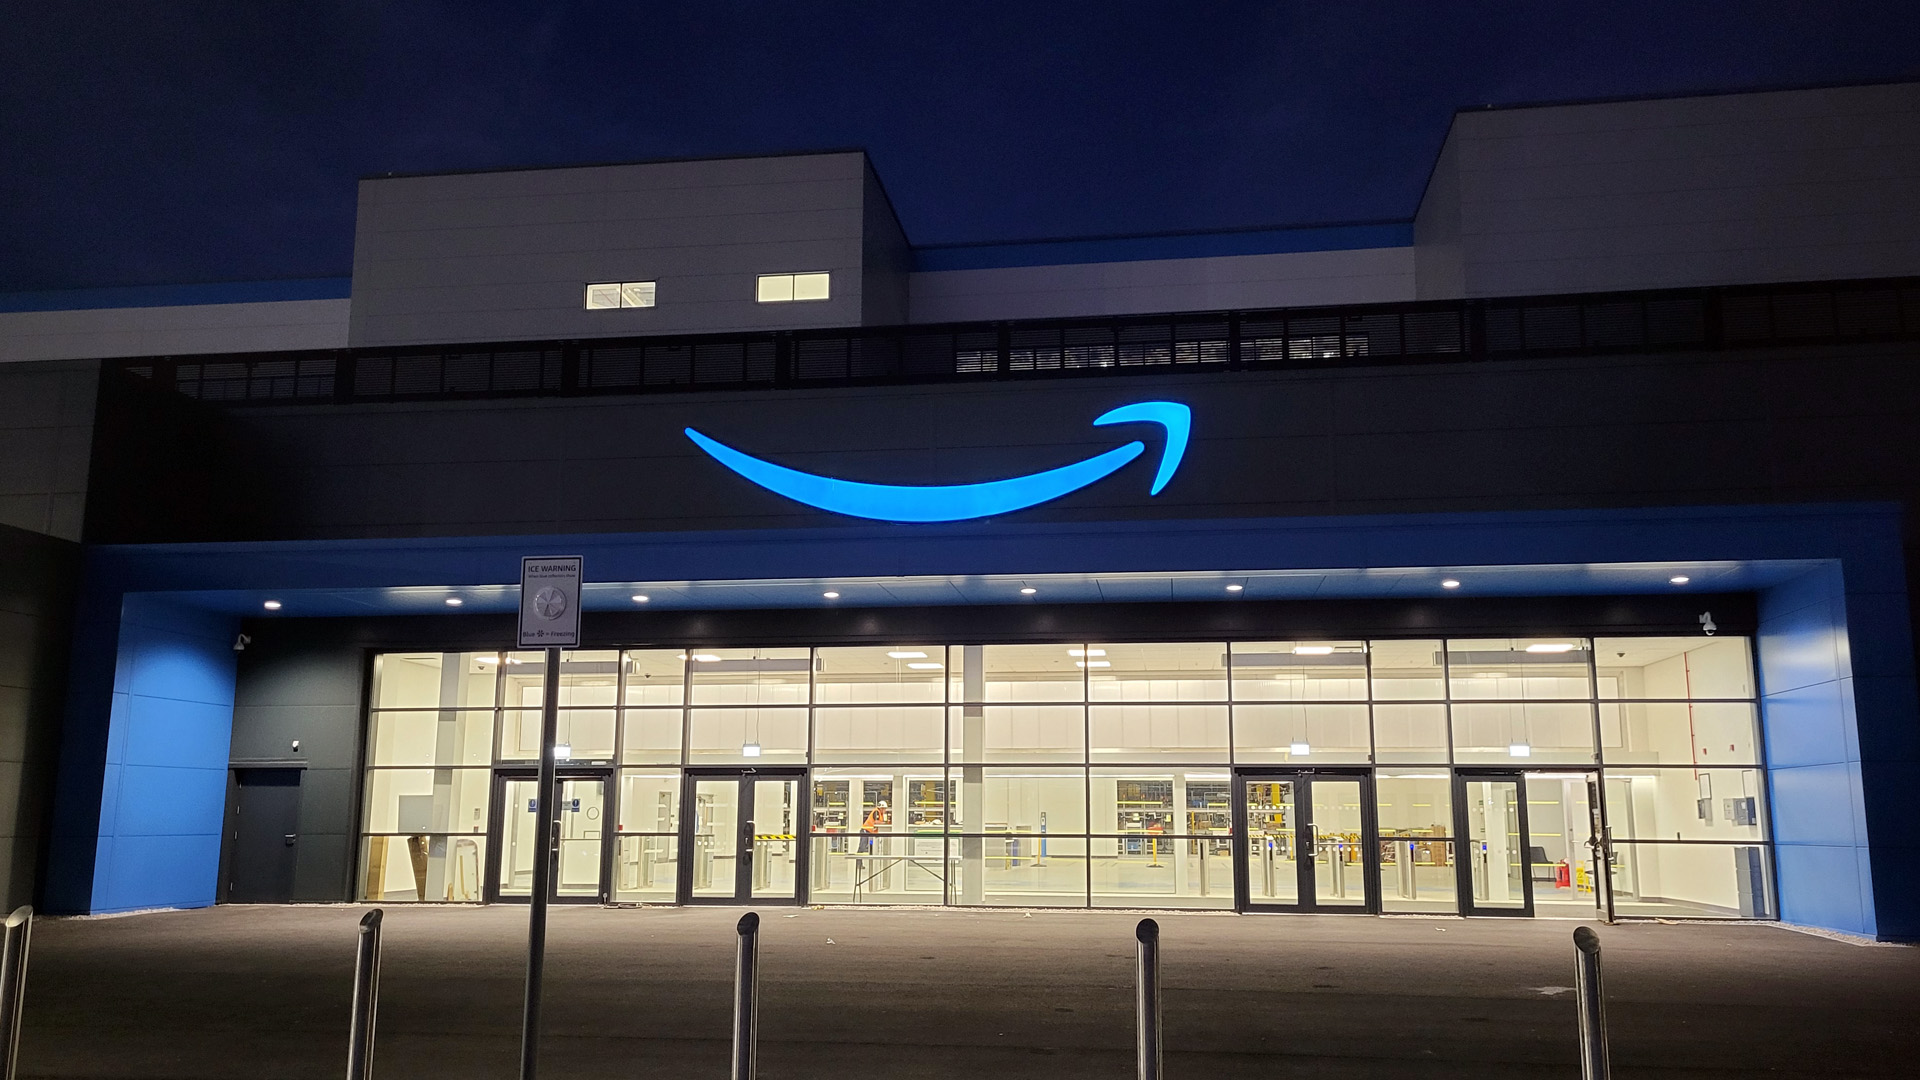 Illuminated Amazon Smile Sign at night